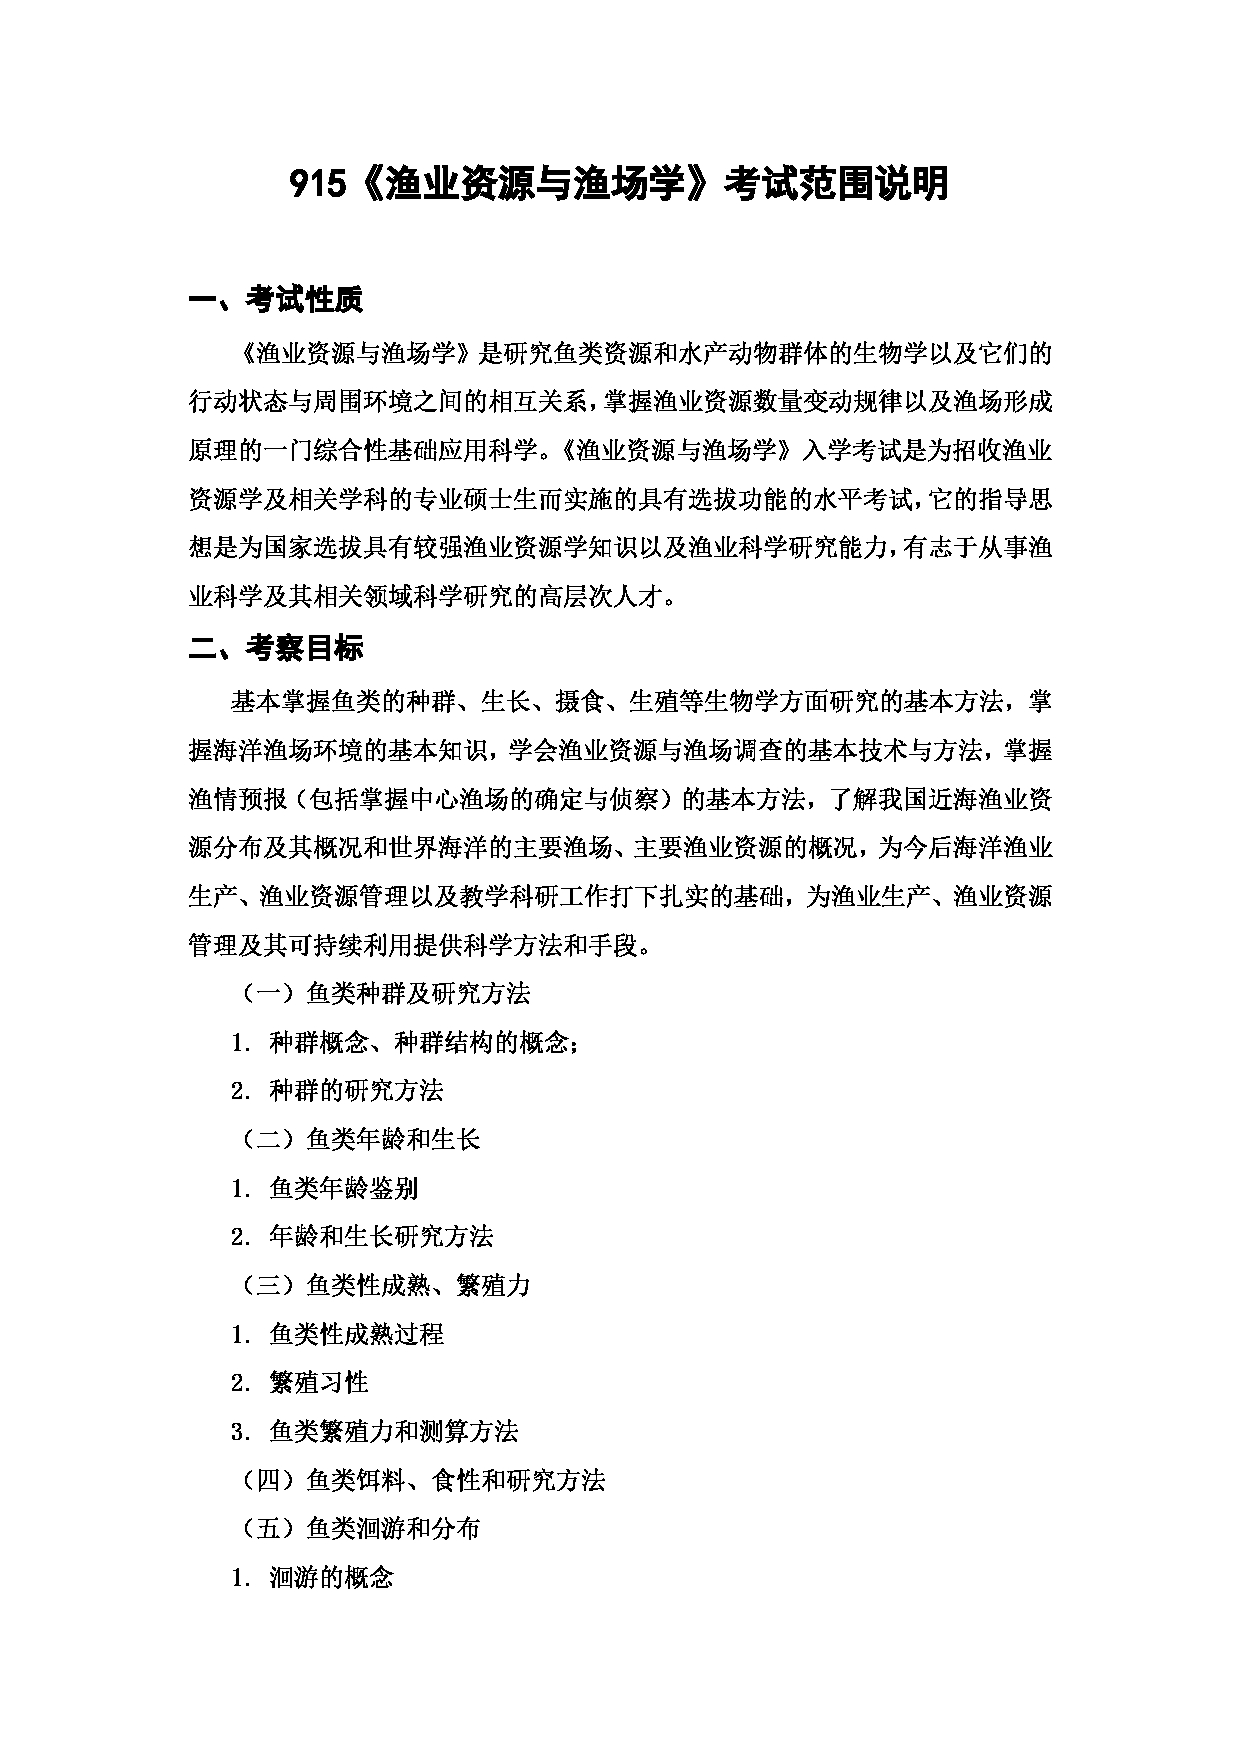 上海海洋大学2023年考研自命题科目 915《渔业资源与渔场学》 考试范围第1页